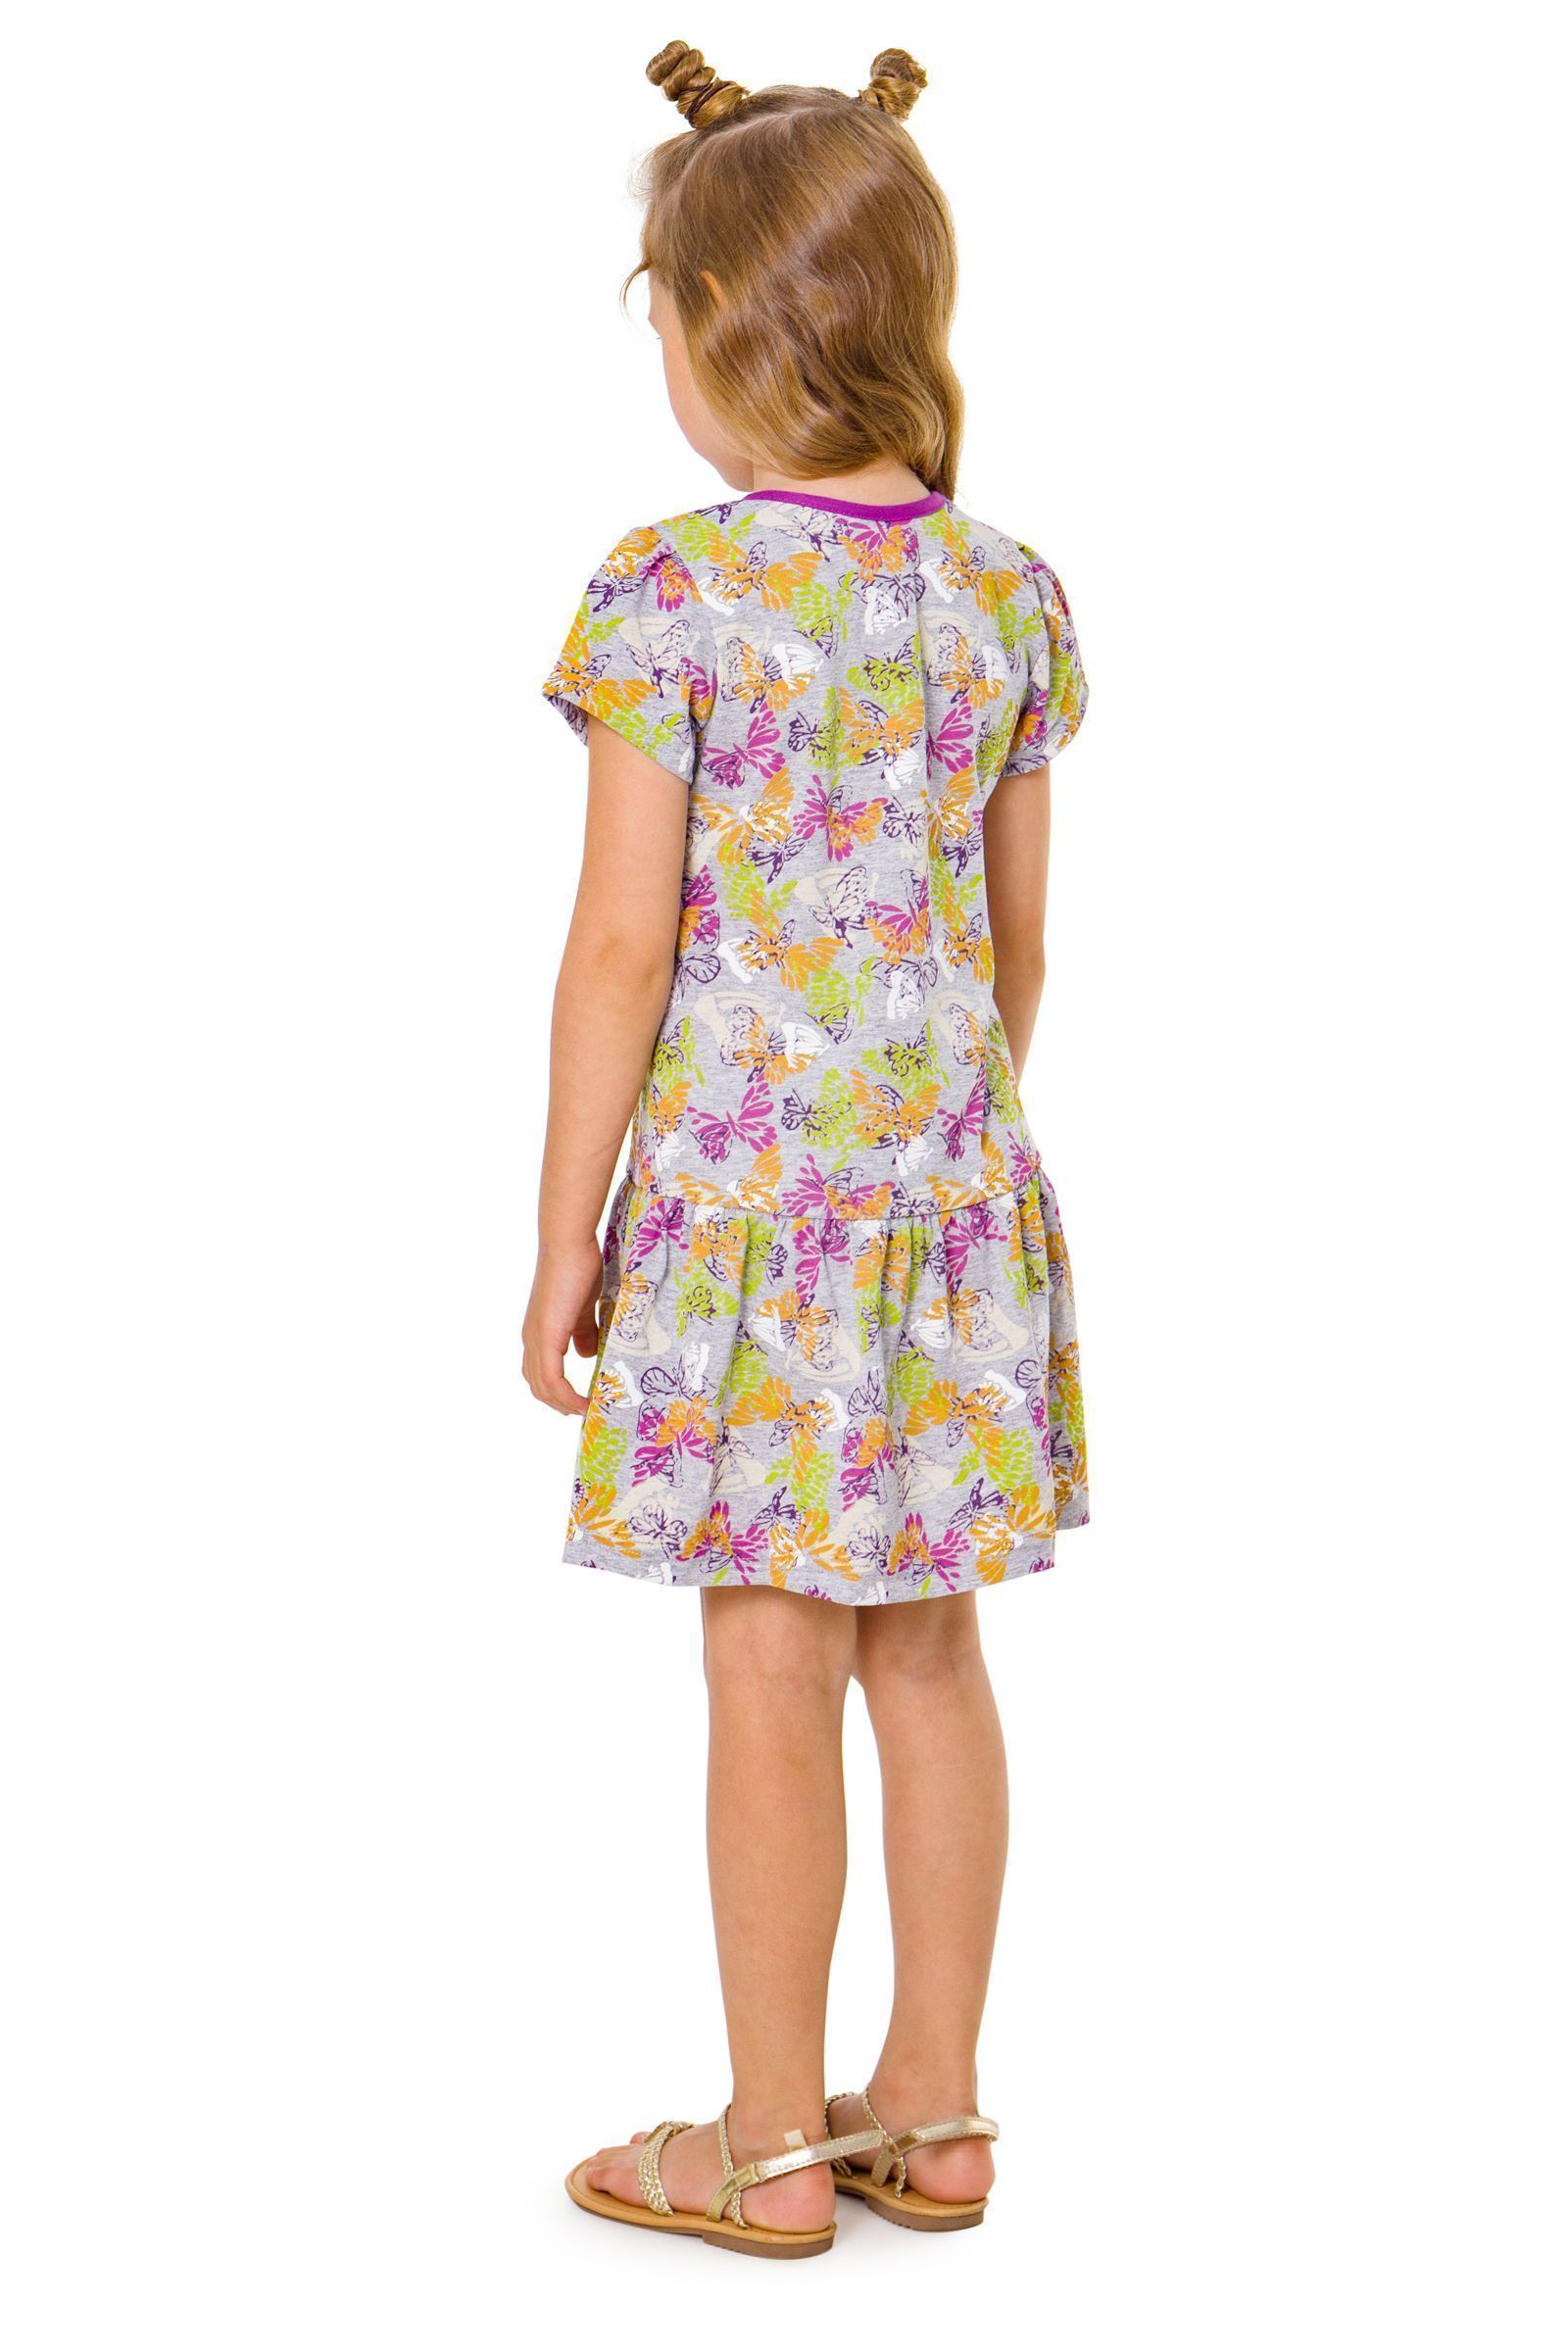 Платье-ПЛ02-2356 оптом от производителя детской одежды 'Алёна'